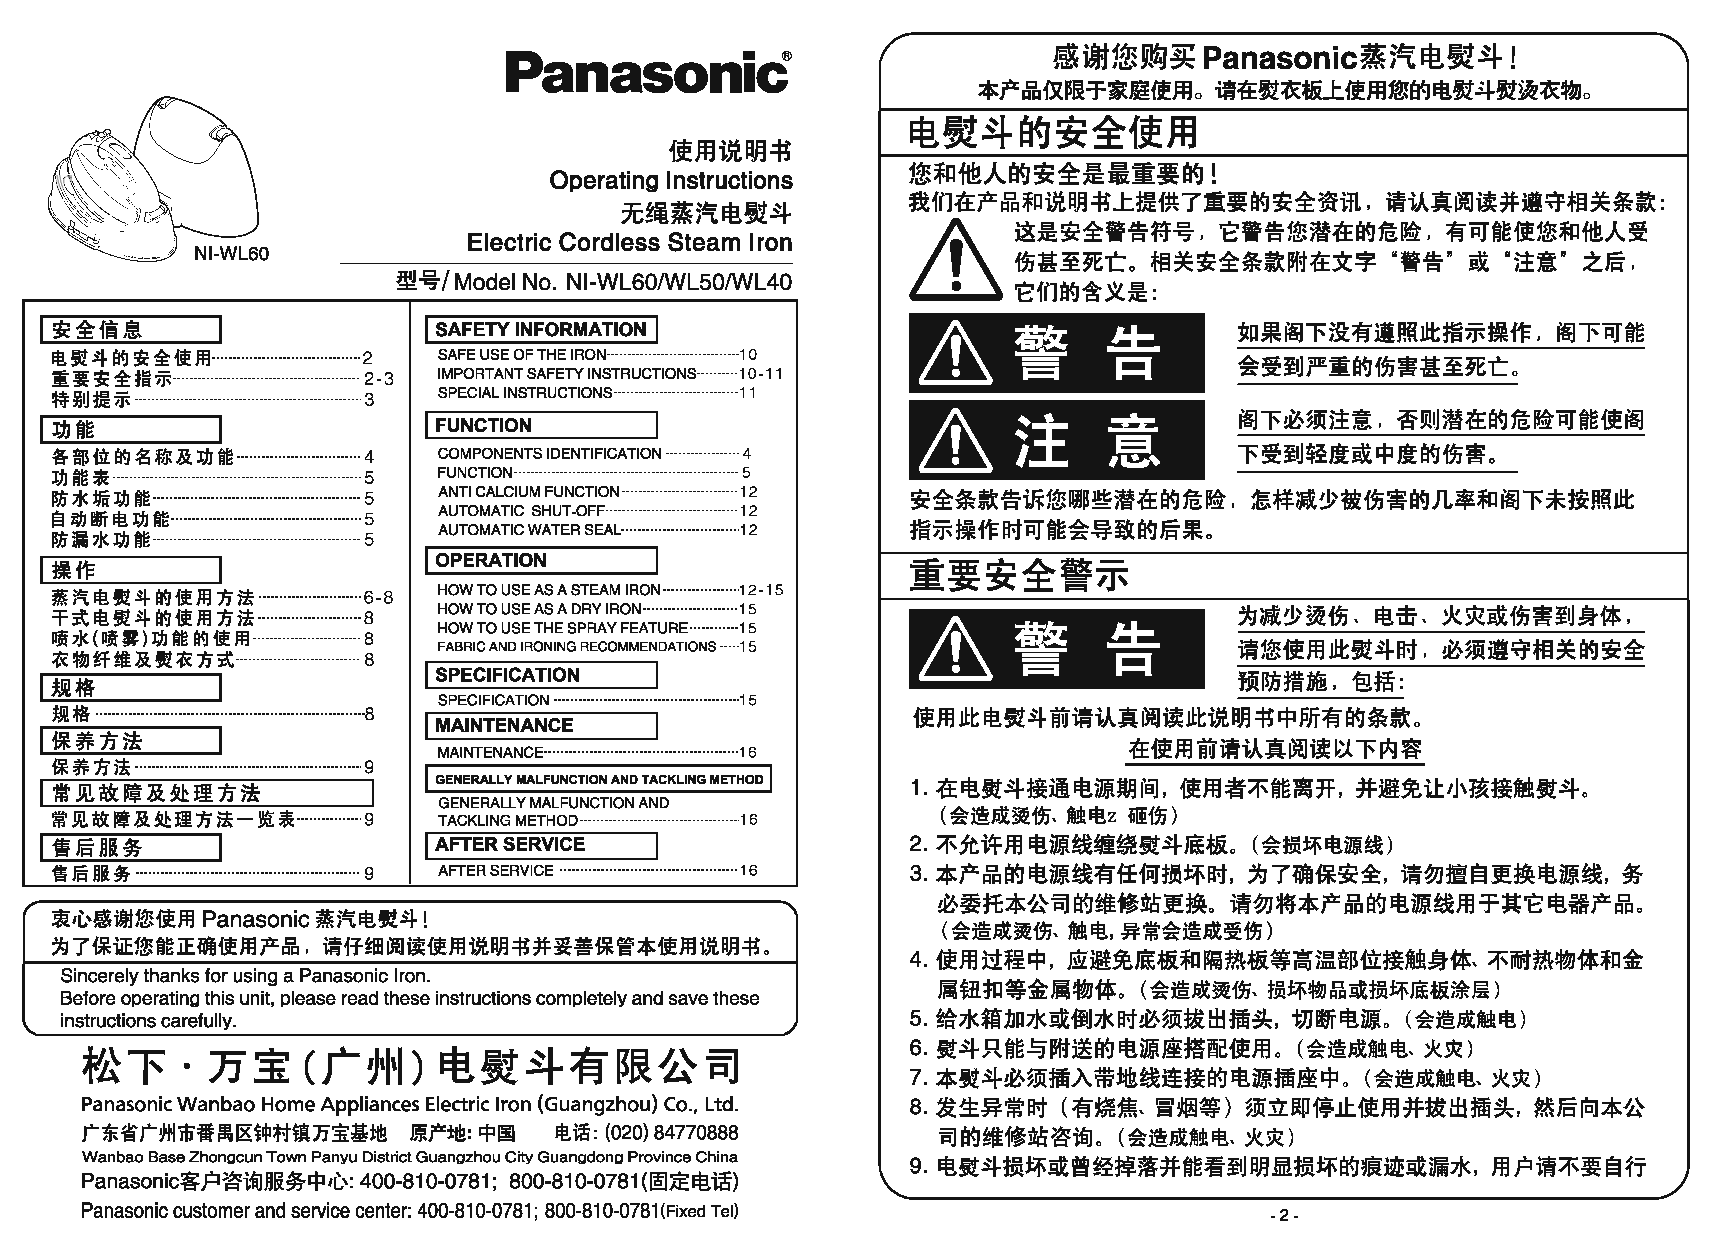 松下 Panasonic NI-WL50 说明书 封面